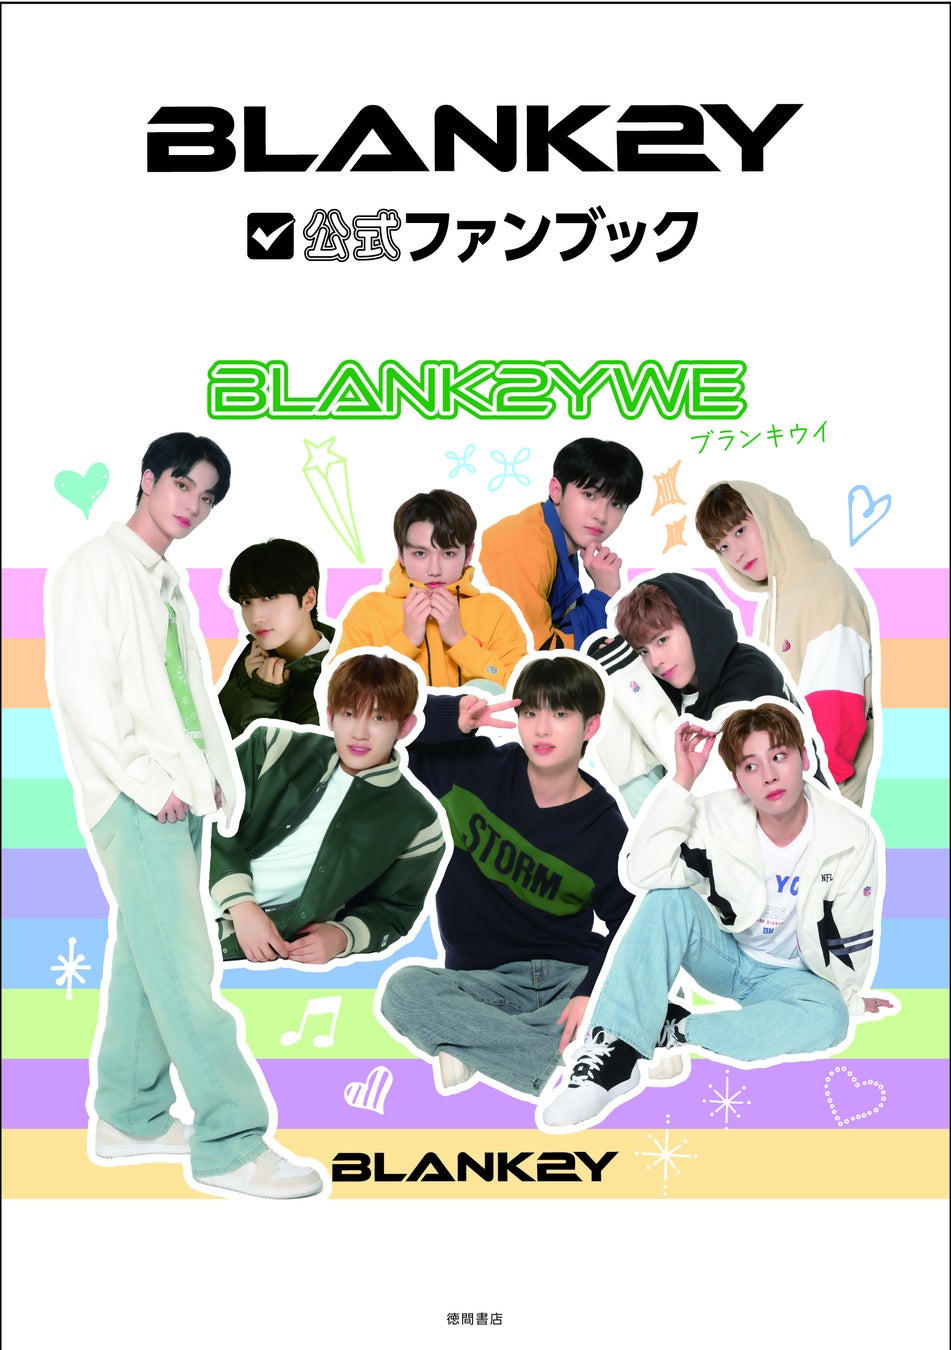 メンバーの素顔に迫る！「BLANK2Y」のファーストファンブックの発売が決定!! グループ初となる「BLANK2Y公式ファンブック BLANK2YWE（ブランキウイ）」のサブ画像1